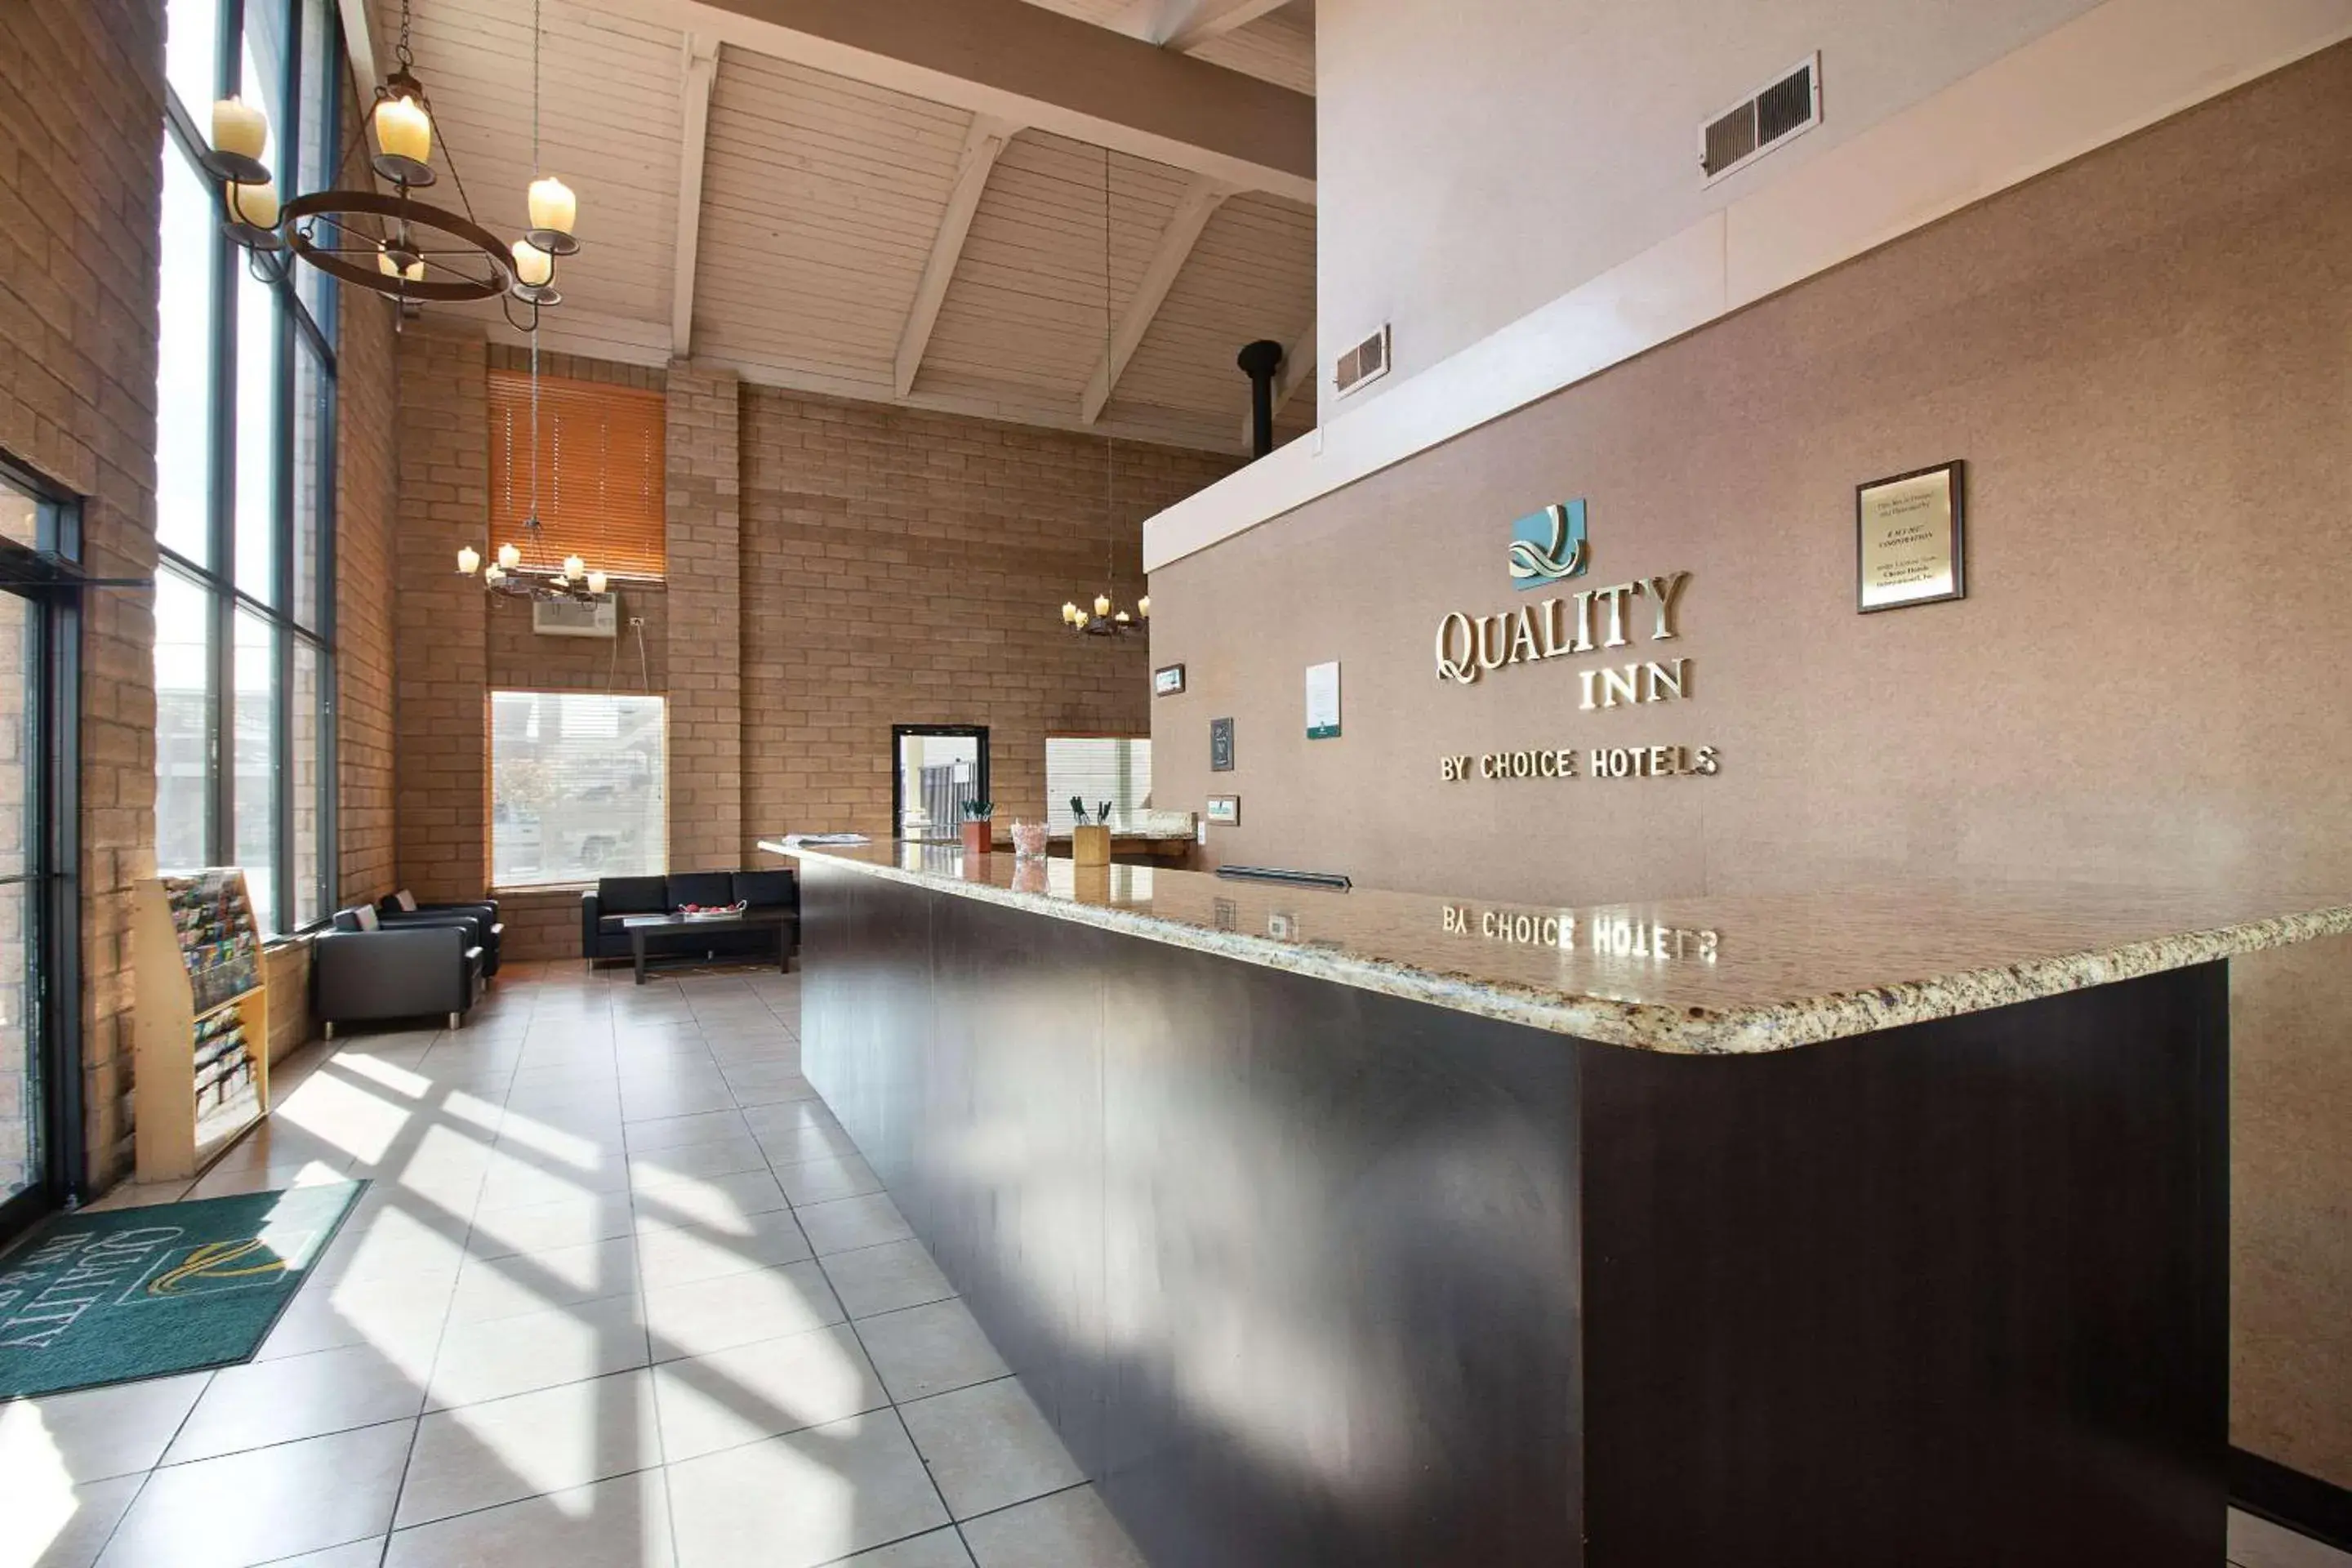 Lobby or reception, Lobby/Reception in Quality Inn Yakima near State Fair Park